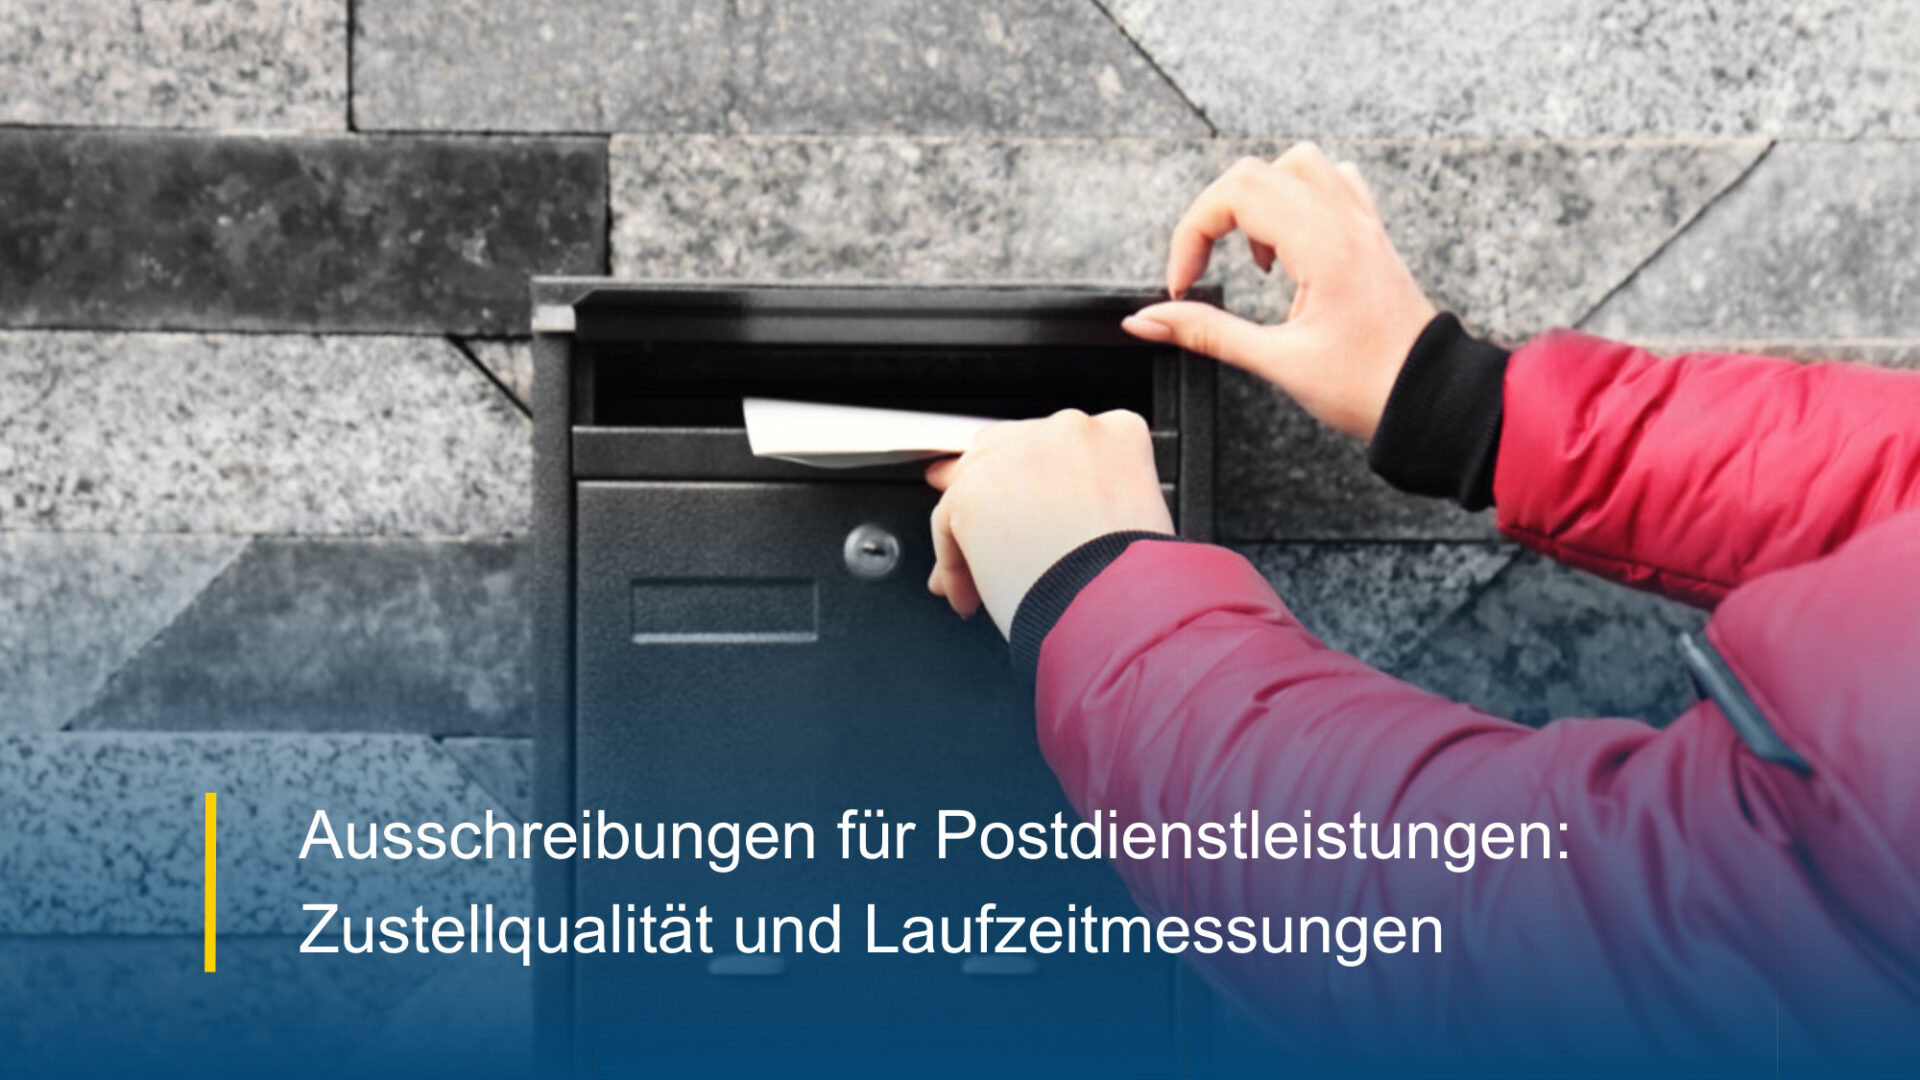 Ausschreibungen für Postdienstleistungen: Zustellqualität und Laufzeitmessungen